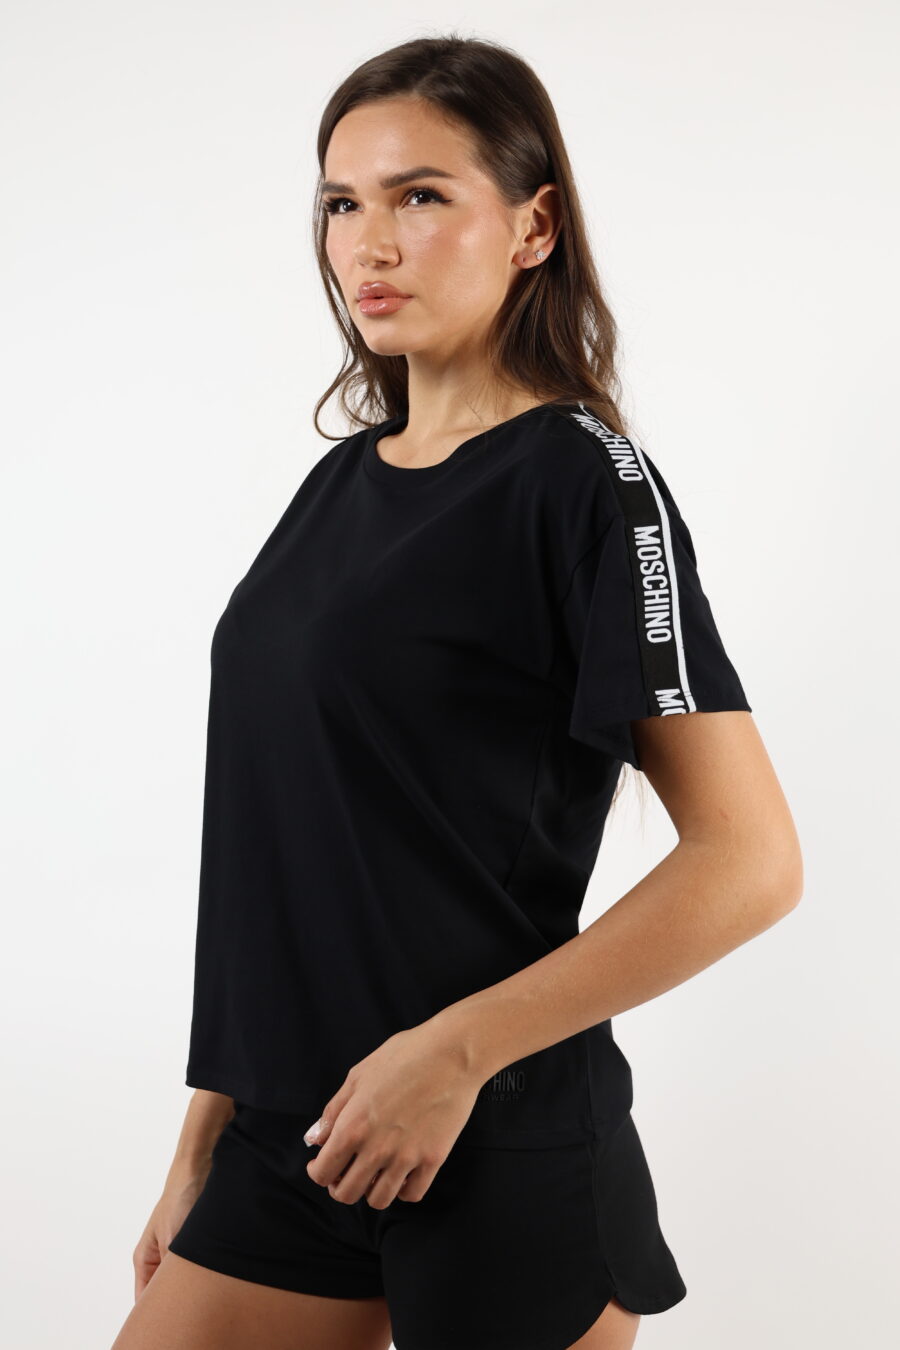 Camiseta negra con logo en cinta hombros blanco - 110494